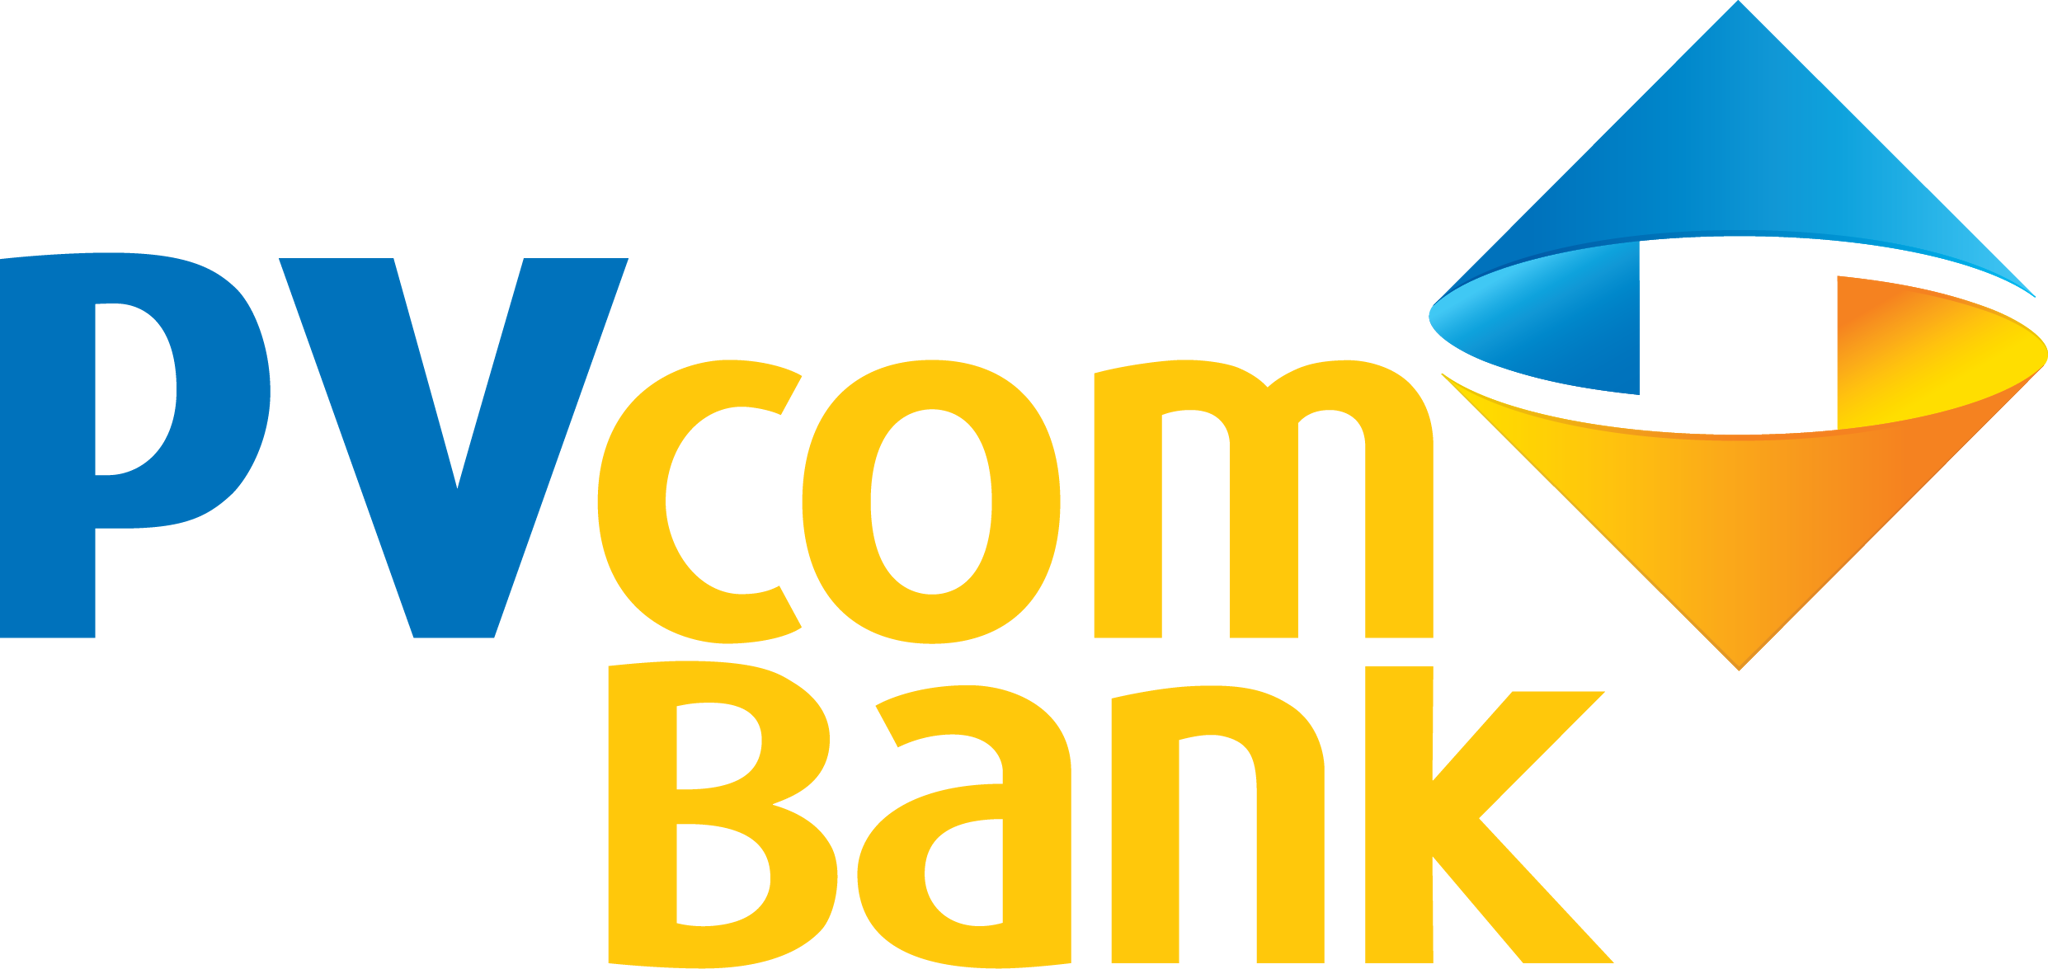 PVCom Bank